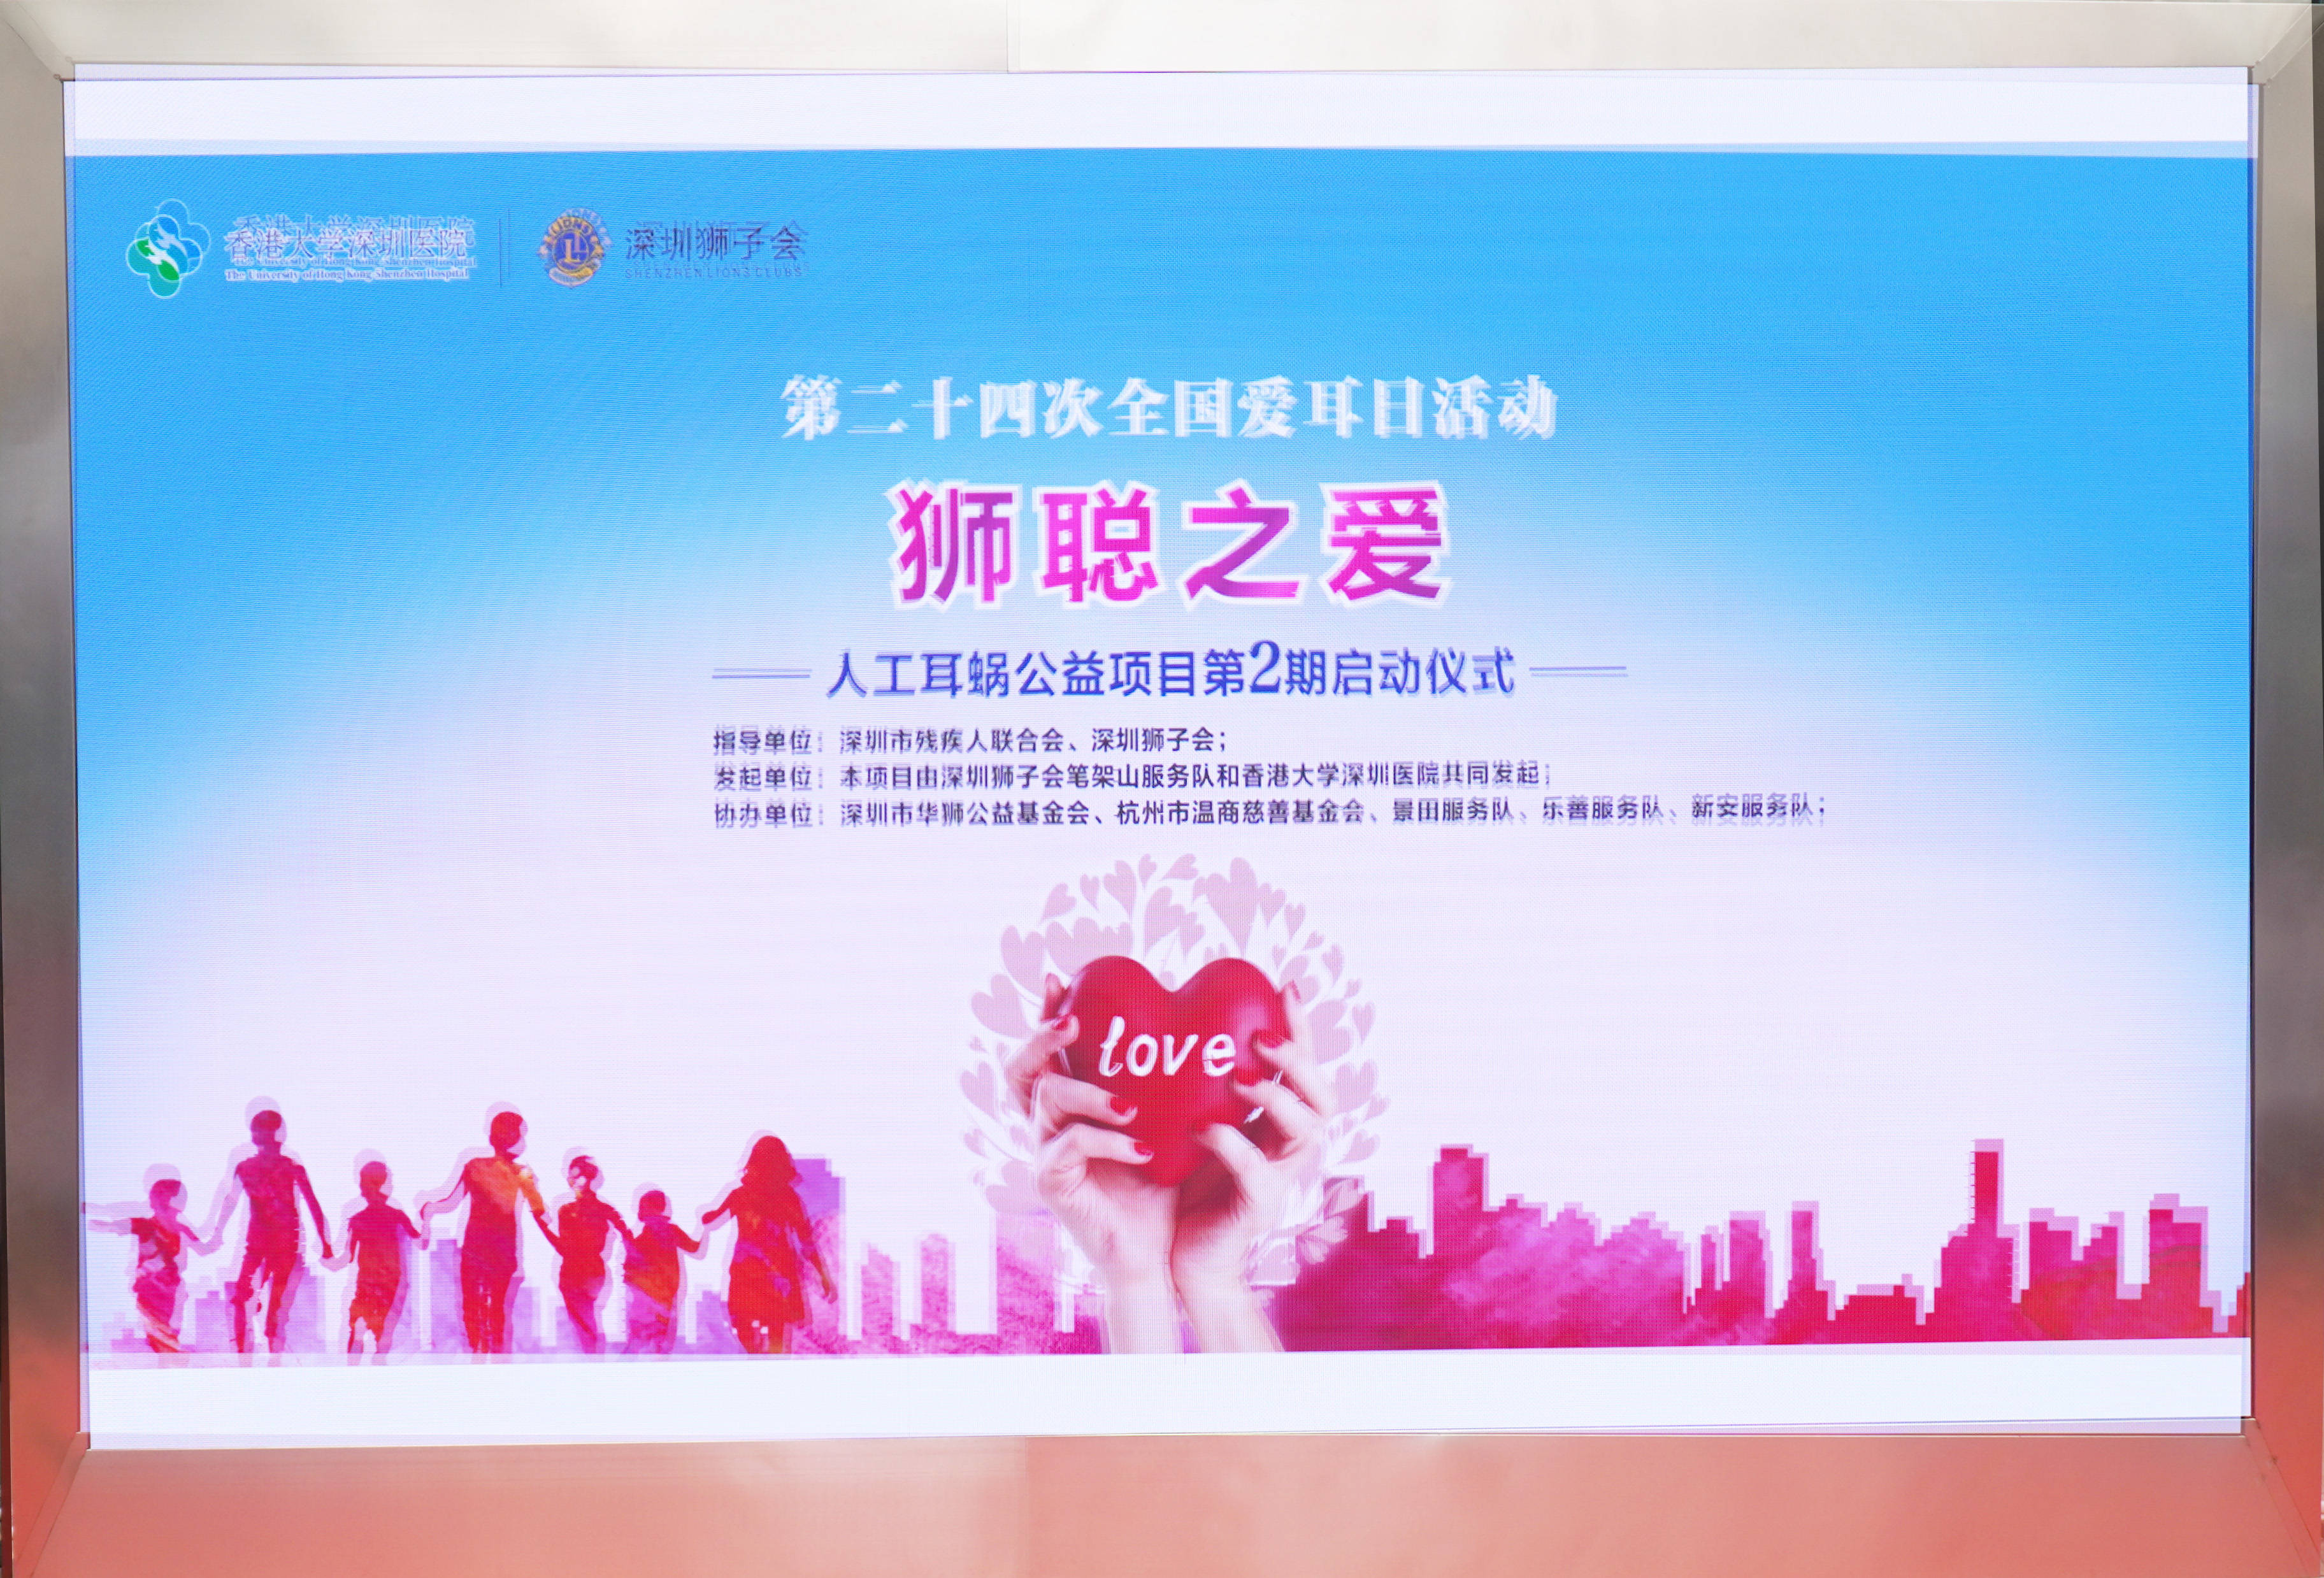 “狮聪之爱”人工耳蜗慈善资助项目第二期在港大深圳医院启动 